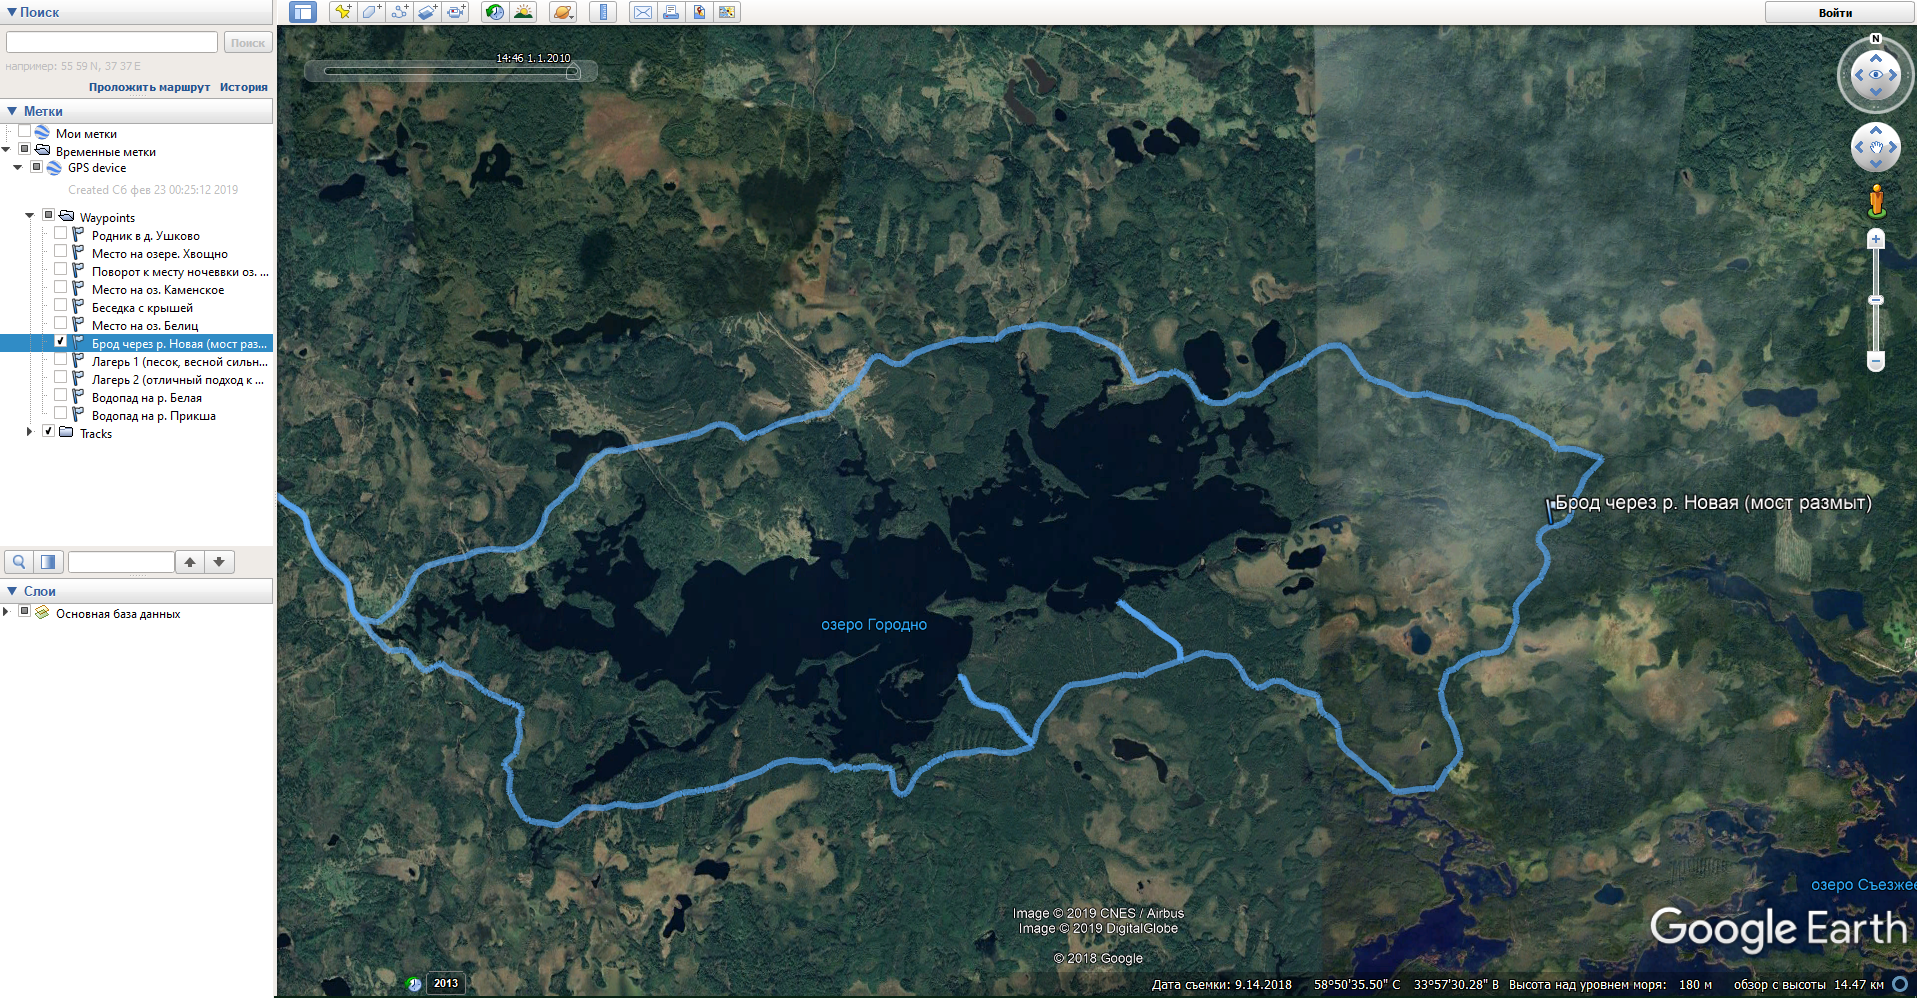 Фрагмент моего майского трека к озеру Городно в Google Earth Pro. Слева можно выбирать точки маршрута и просматривать их описание. Хотя брода и реки из-за деревьев на карте не видно, по описанию точки сразу понятно, что брод там есть